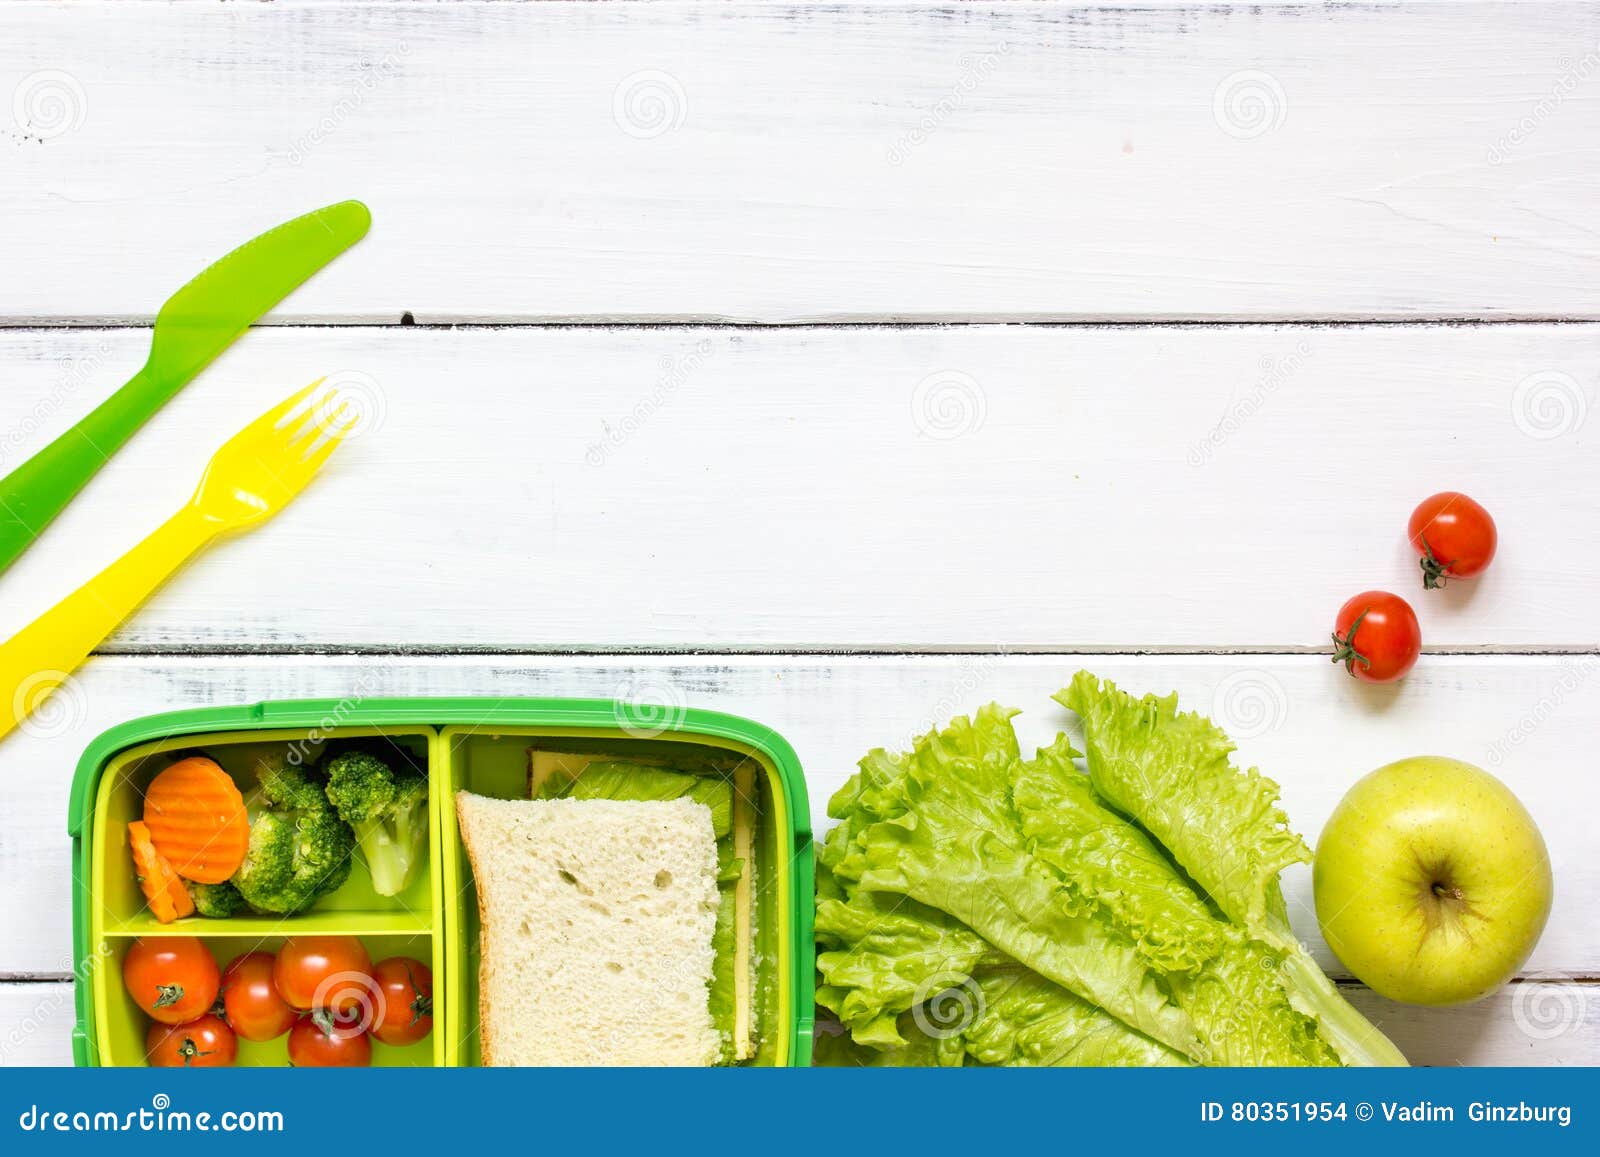 Lunchbox đúng là lựa chọn tiện lợi và tiết kiệm thời gian cho món ăn trưa của bạn. Bạn có thể đựng đầy đủ các loại rau, trái cây và cả món chính vào trong một hộp cơm nhỏ gọn, tạo nên một bữa trưa đầy đủ dinh dưỡng và mới lạ. Hãy xem ảnh và tìm ngay cho mình một chiếc lunchbox thật xinh để mang đi làm nhé! 